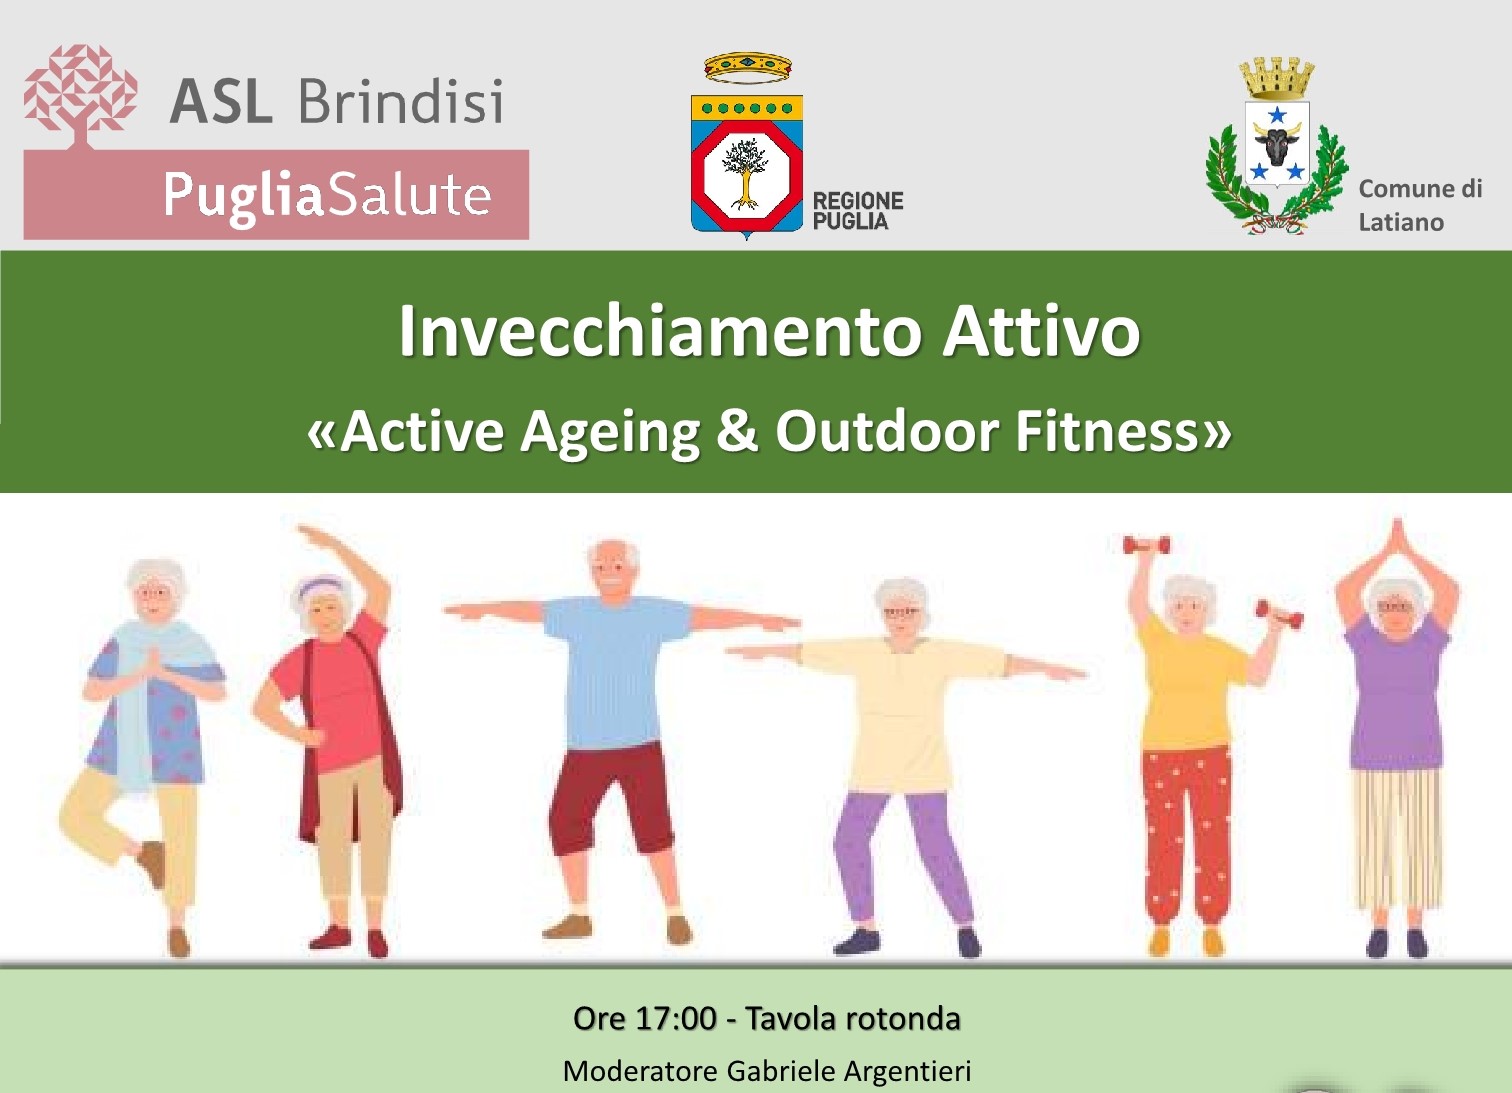 Latiano: ASL. Active ageing&Outdoor fitness. Conferenza sulla promozione e valorizzazione dell'invecchiamento attivo